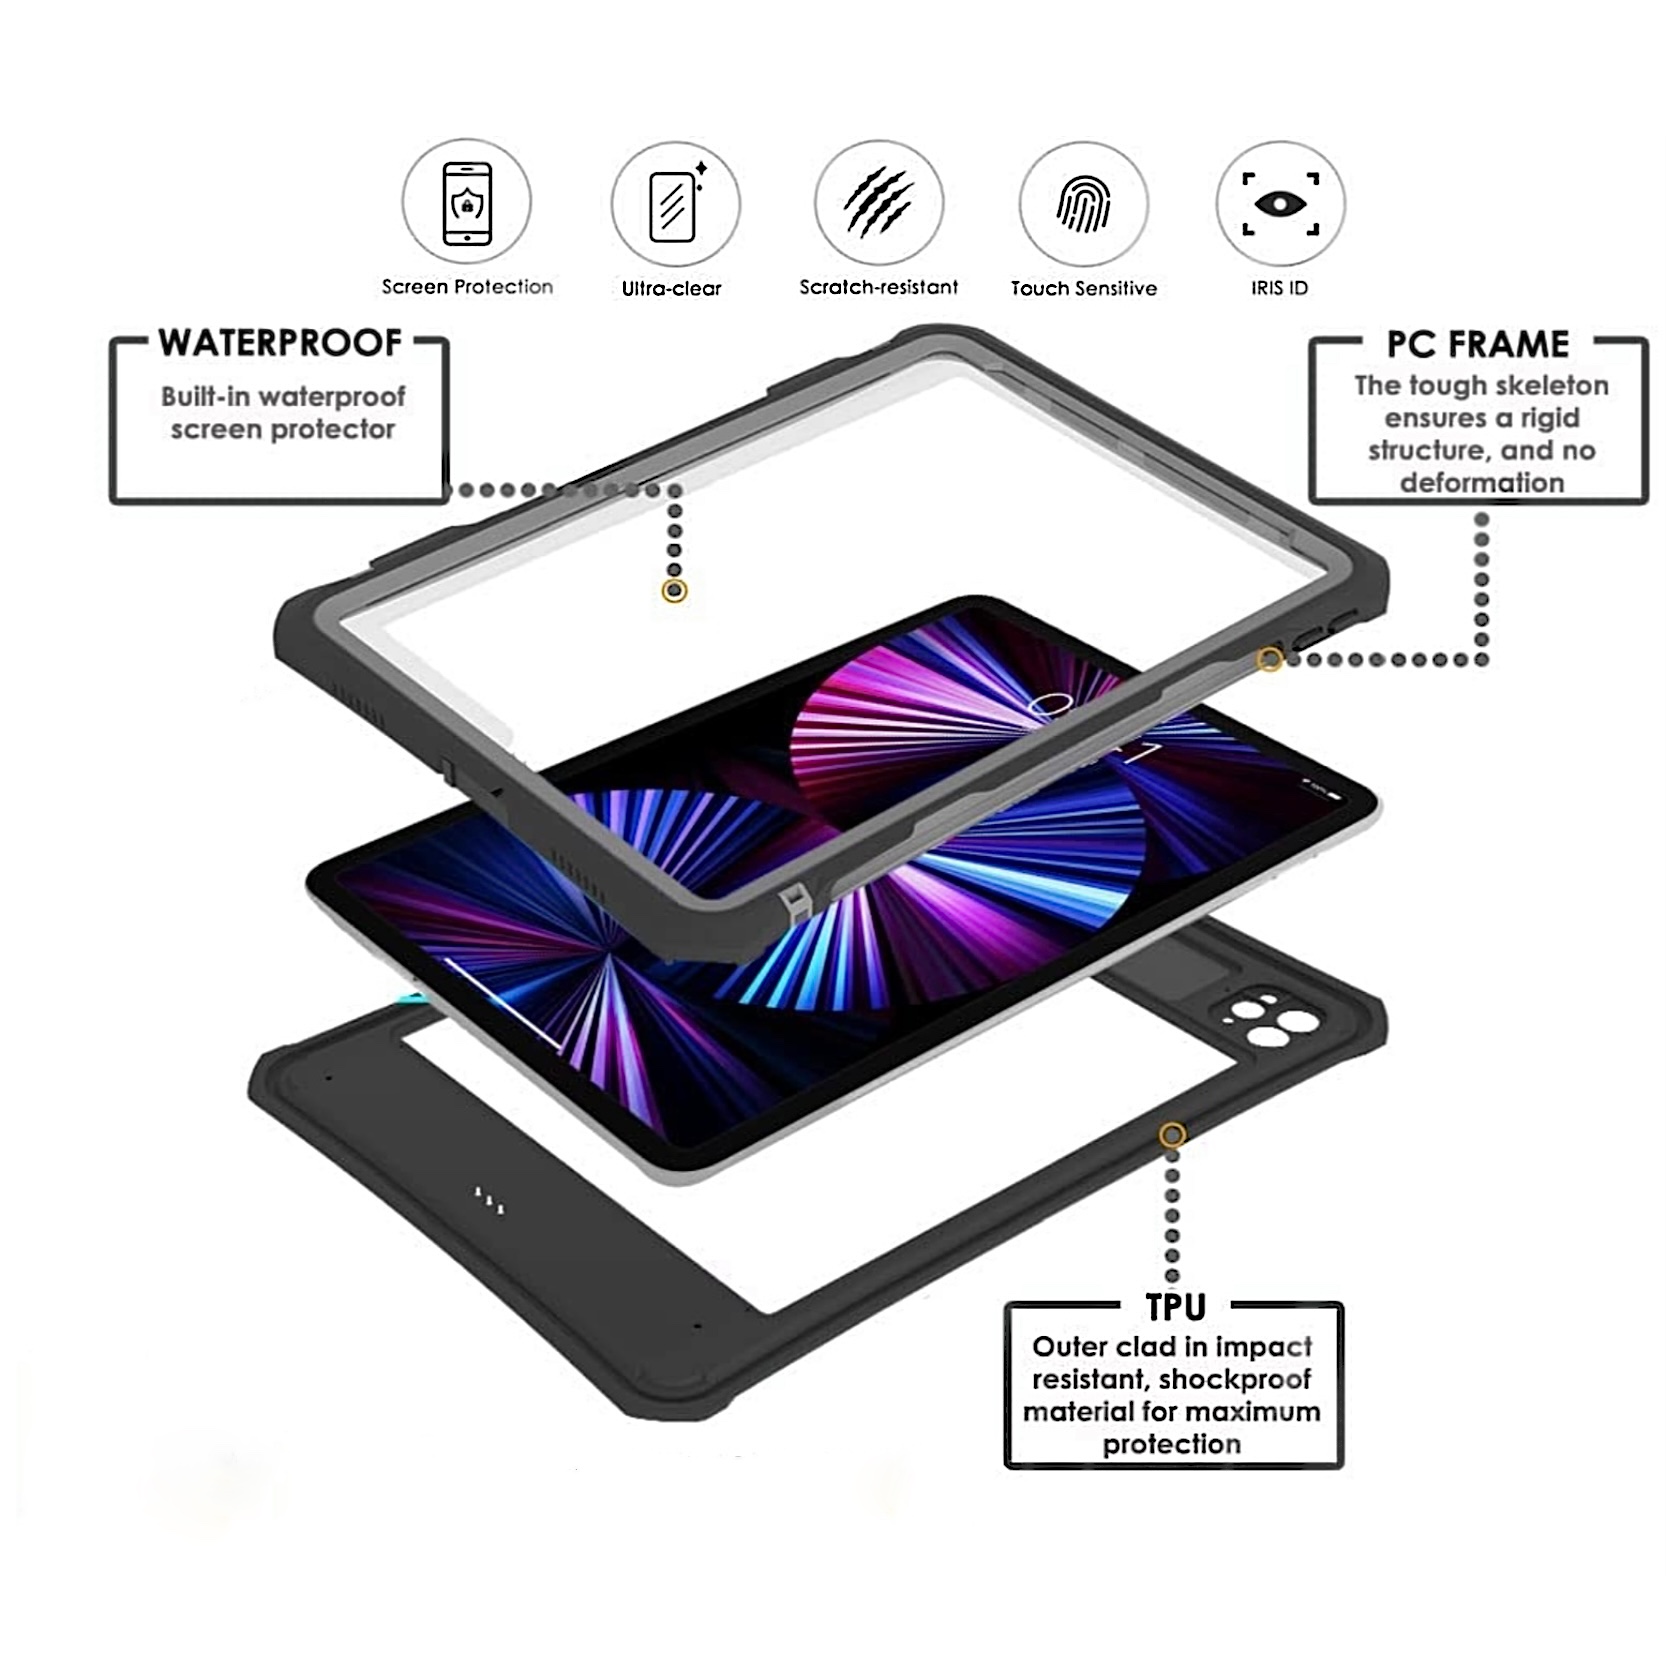 Nouveau boîtier Ipad Pro 11 pouces 2021 (3e génération) / 2020 (2e